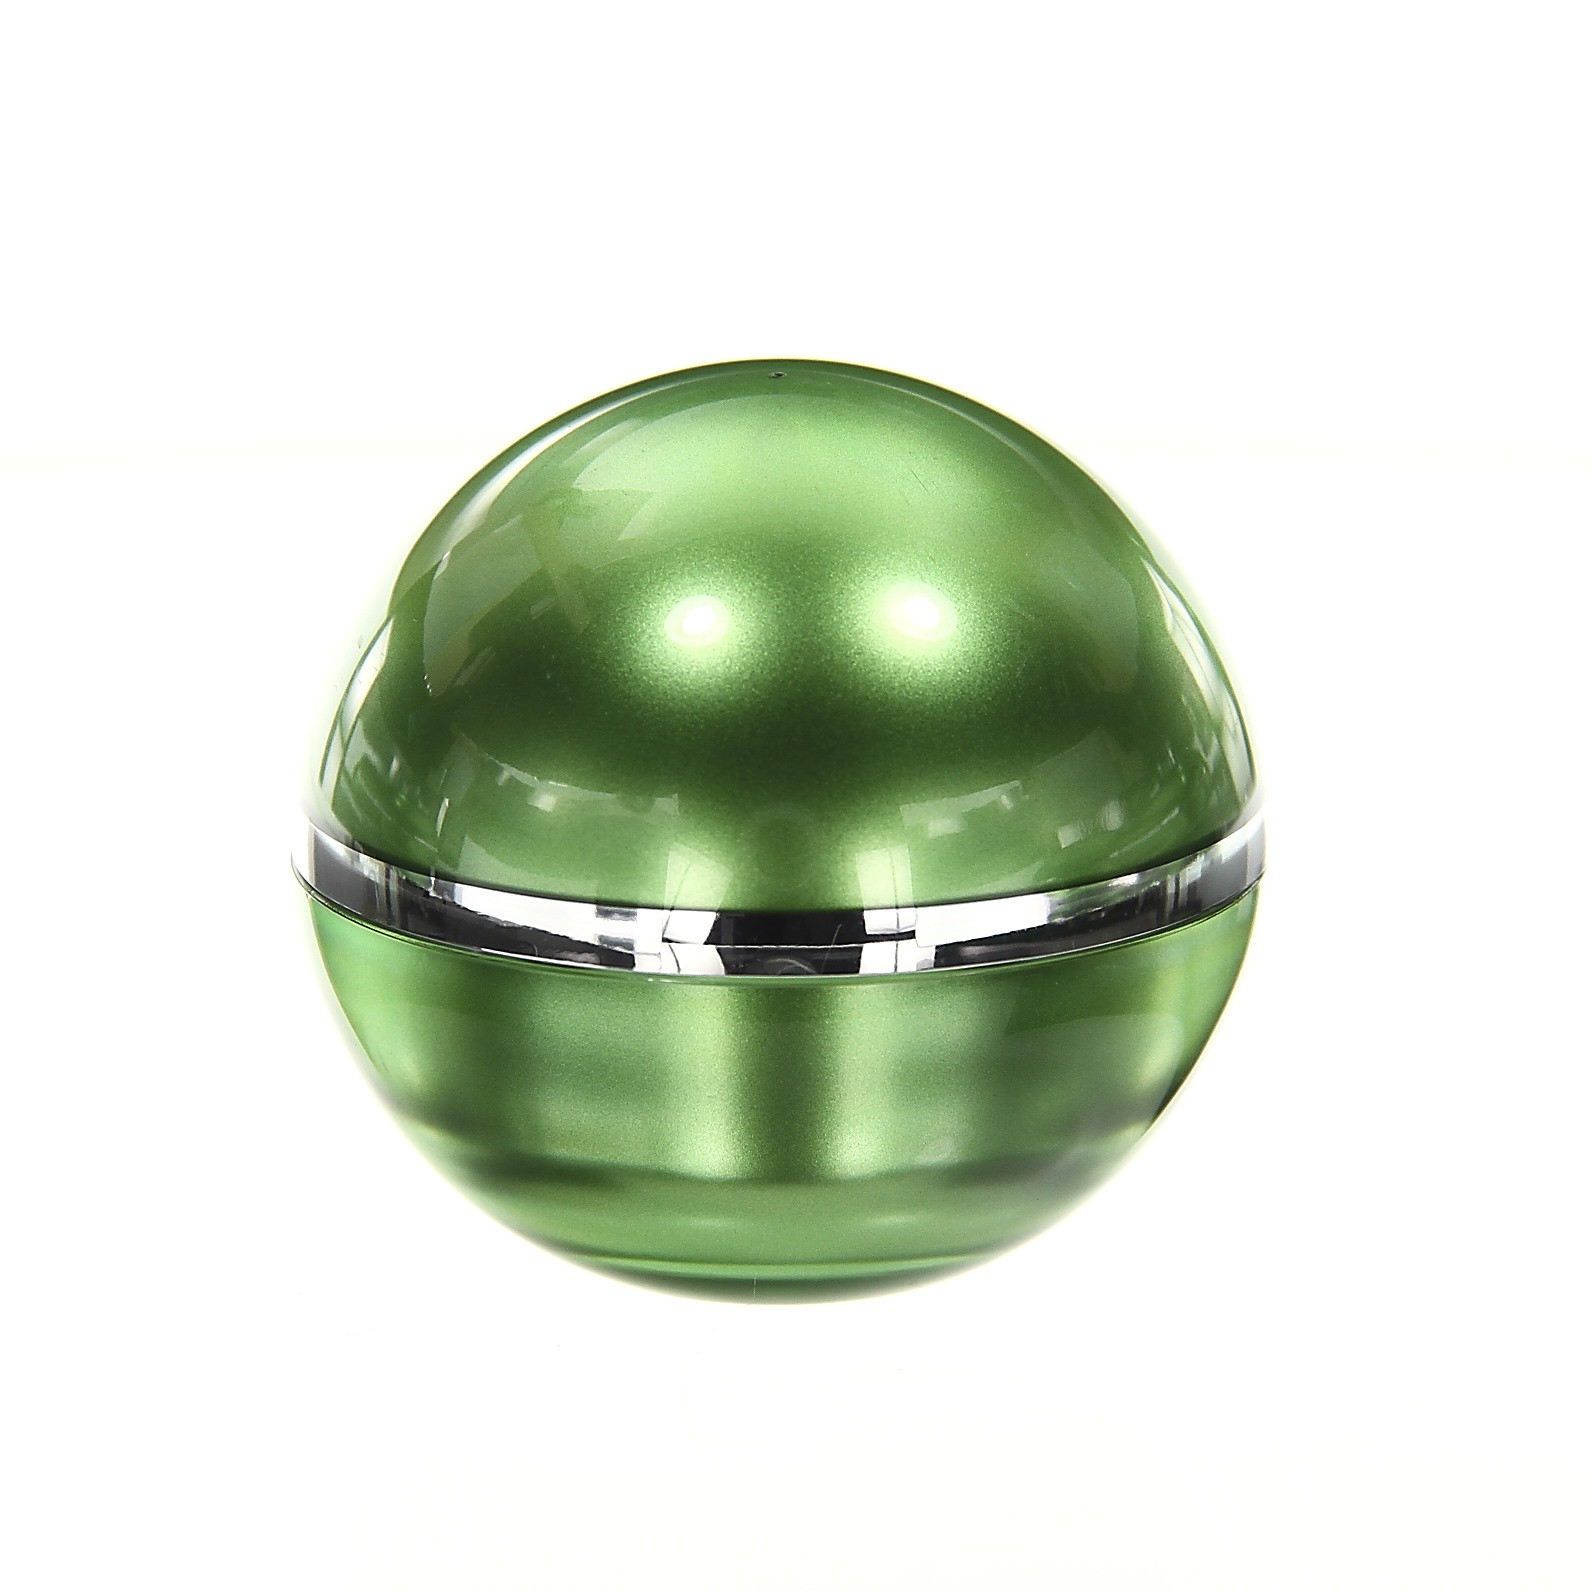 Ball 30ml Grün